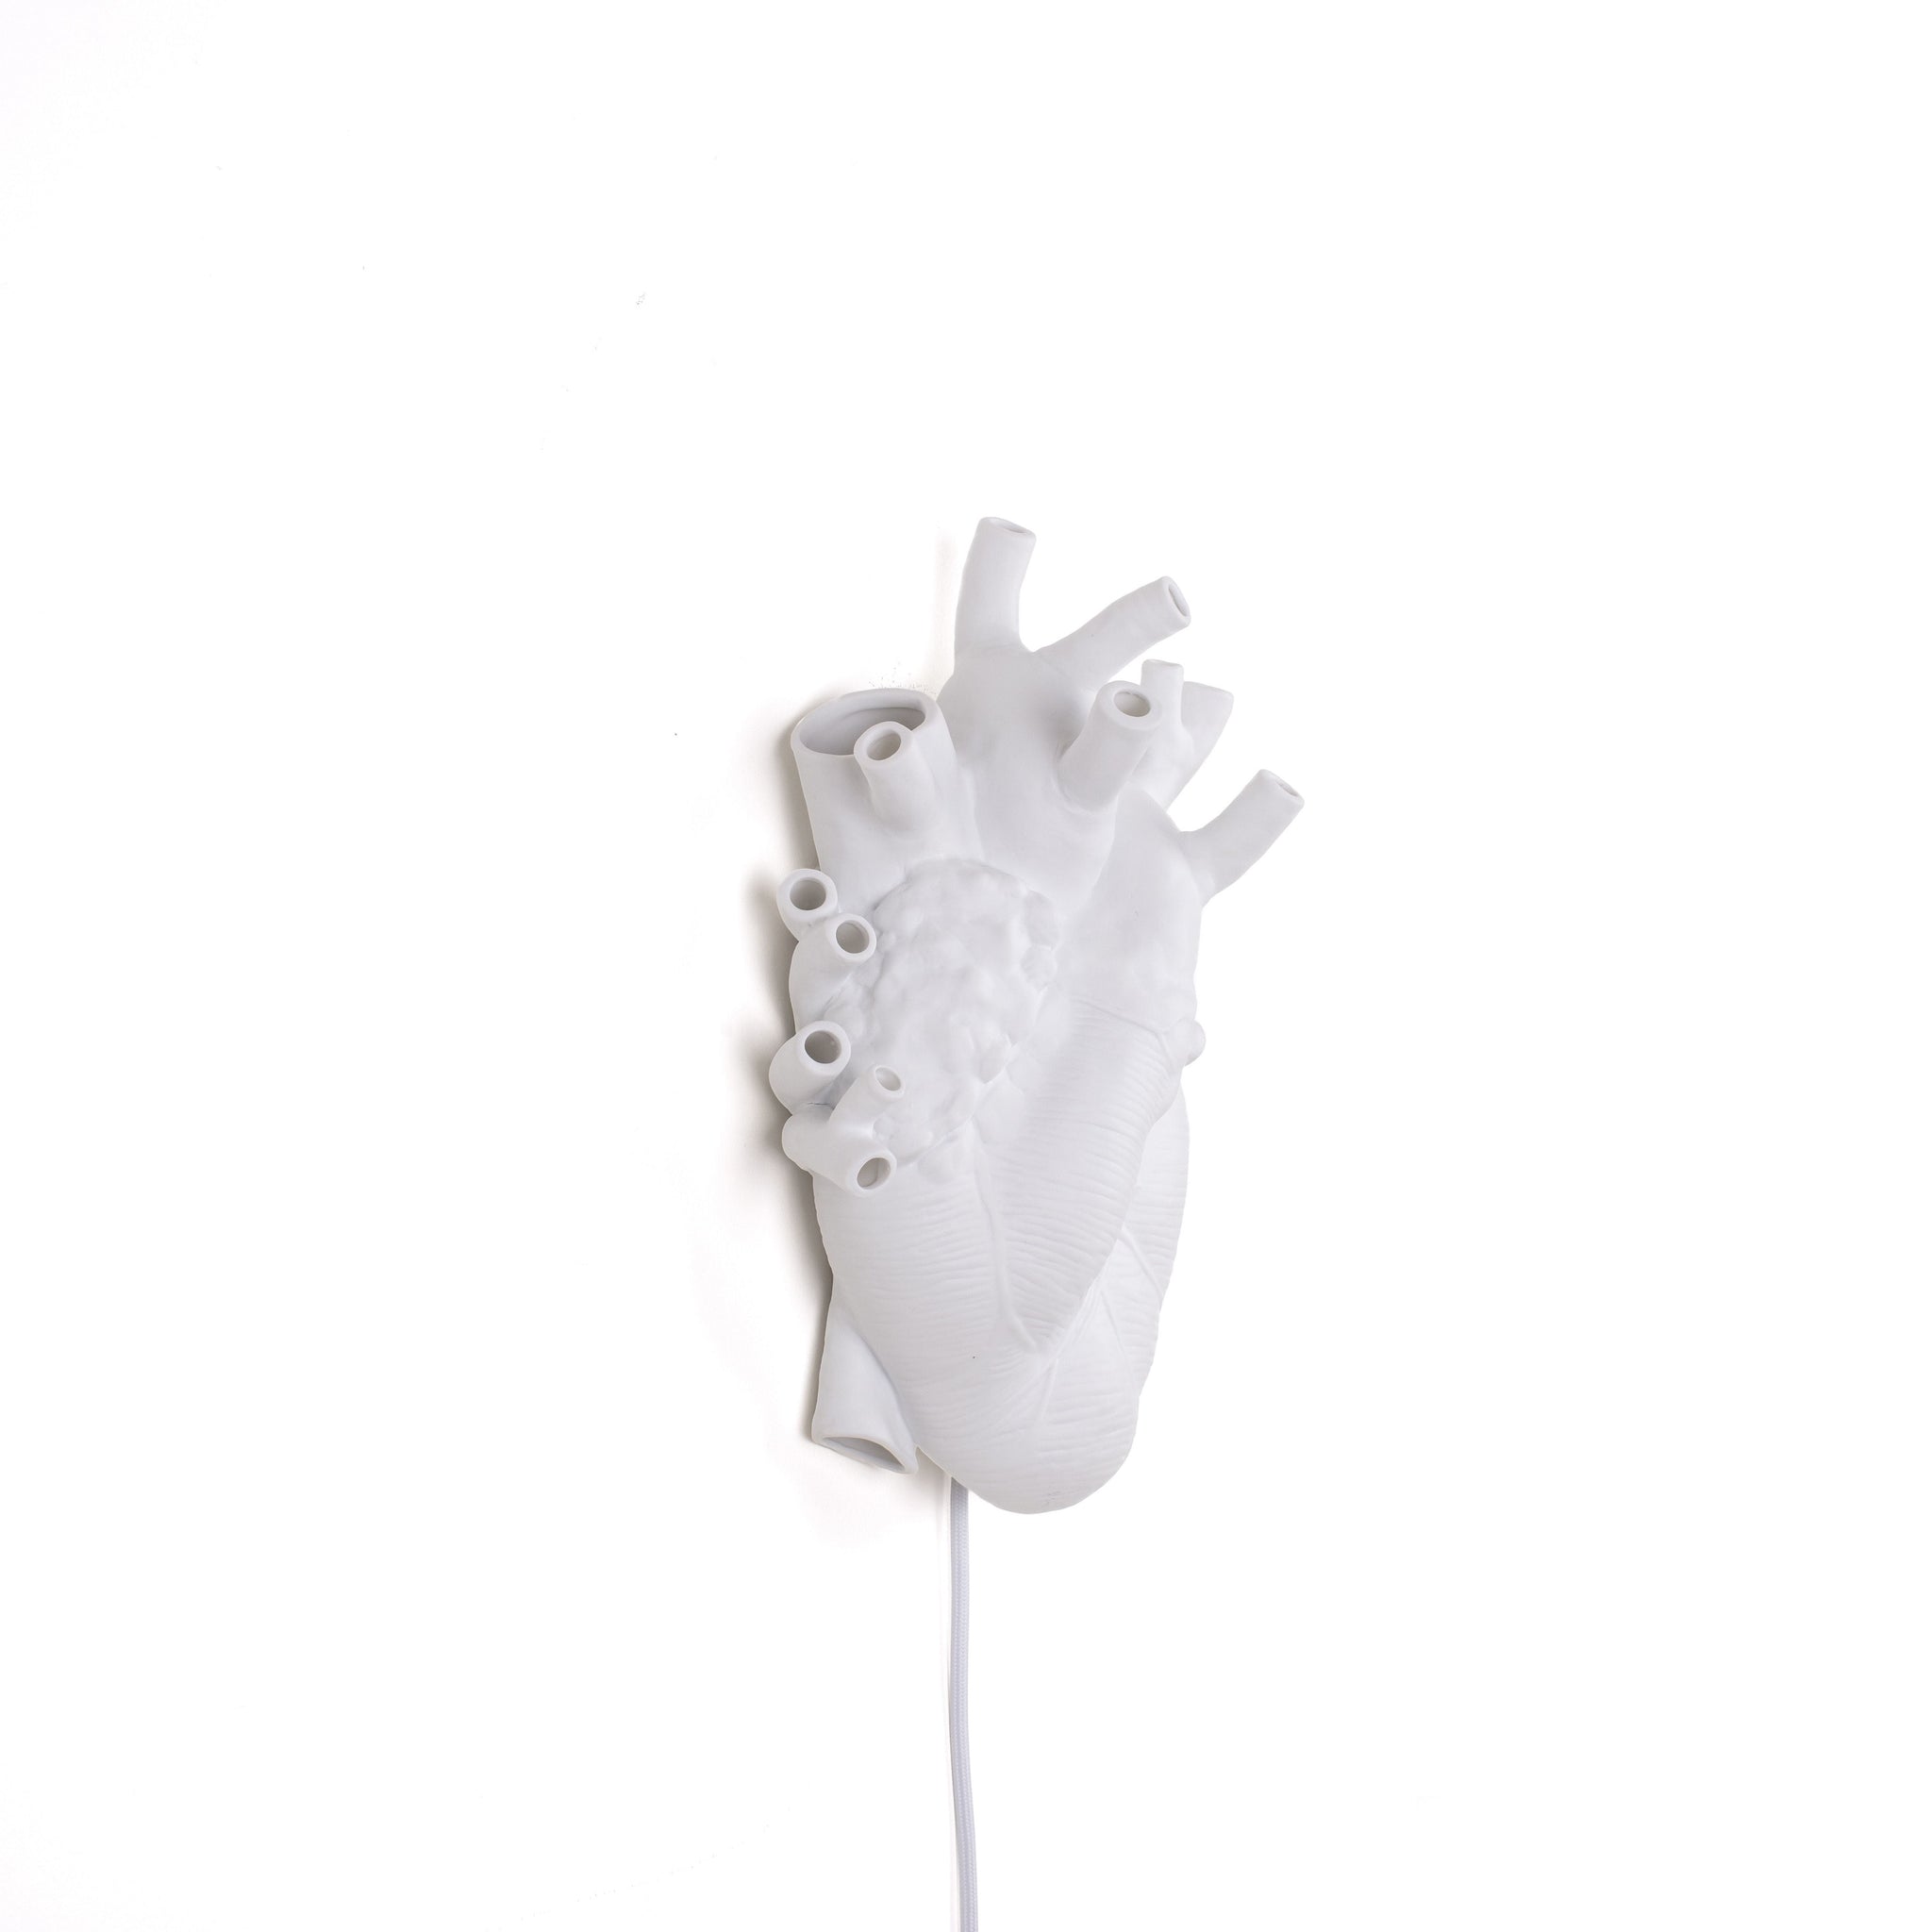 De Heart Lamp van Seletti is een echte eye-catcher in je interieur. Het witte porselein geeft een prachtige warme kleur wanneer de lamp aan is. Deze lamp is vormgegeven in de vorm van een anatomisch menselijk hart, en staat hiermee ook symbool voor romantiek.